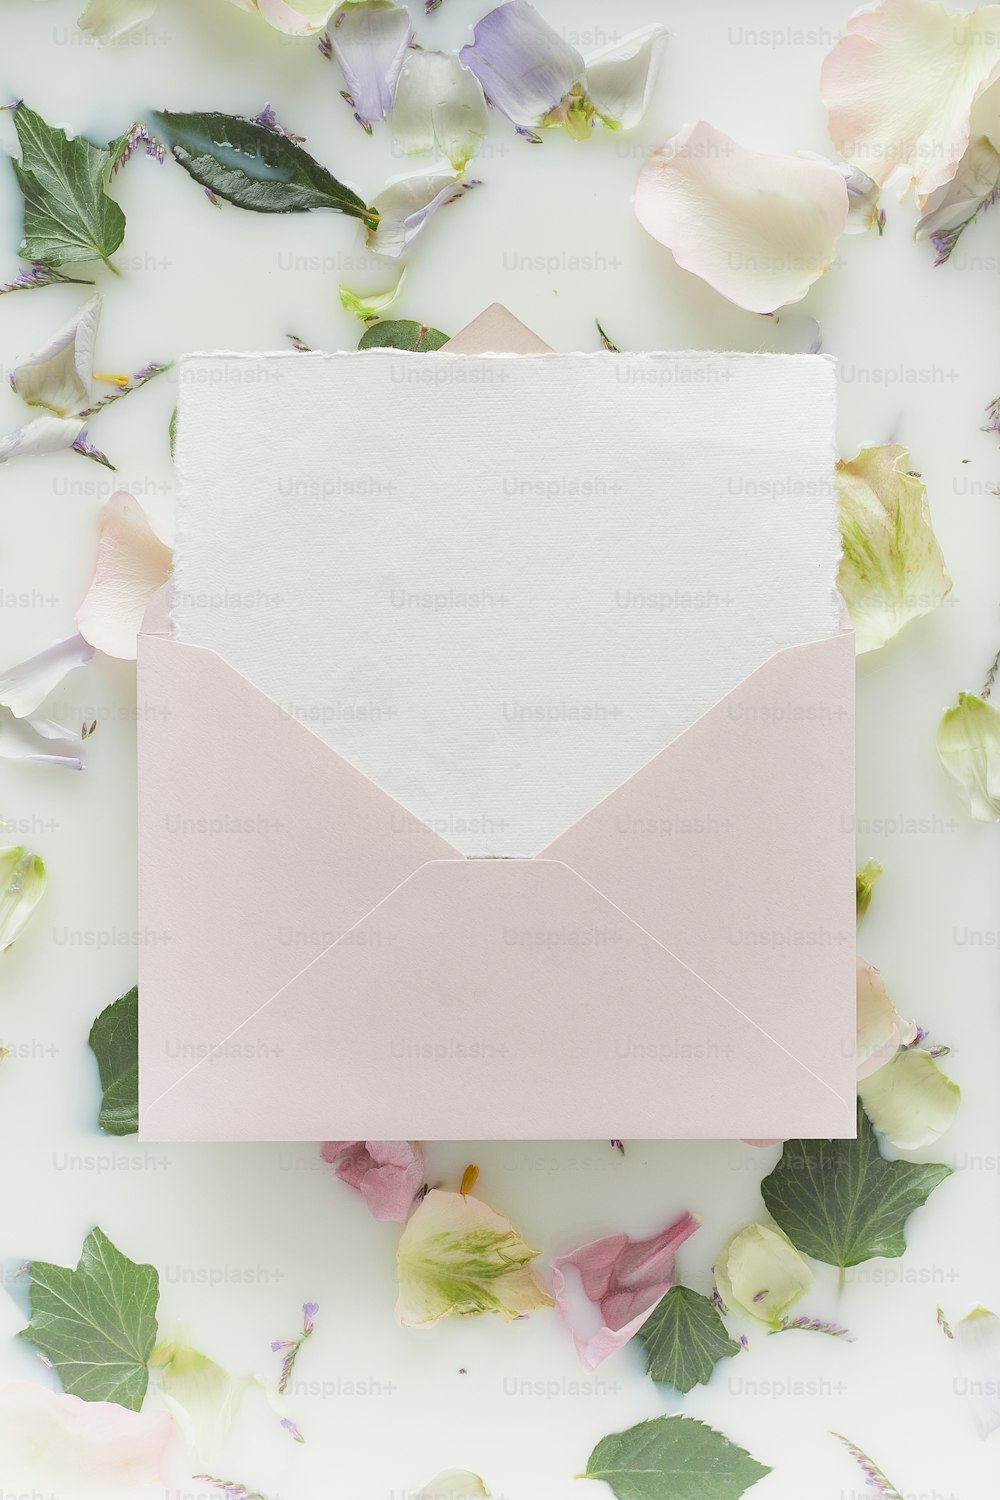 une enveloppe blanche avec un papier rose à l’intérieur entourée de fleurs